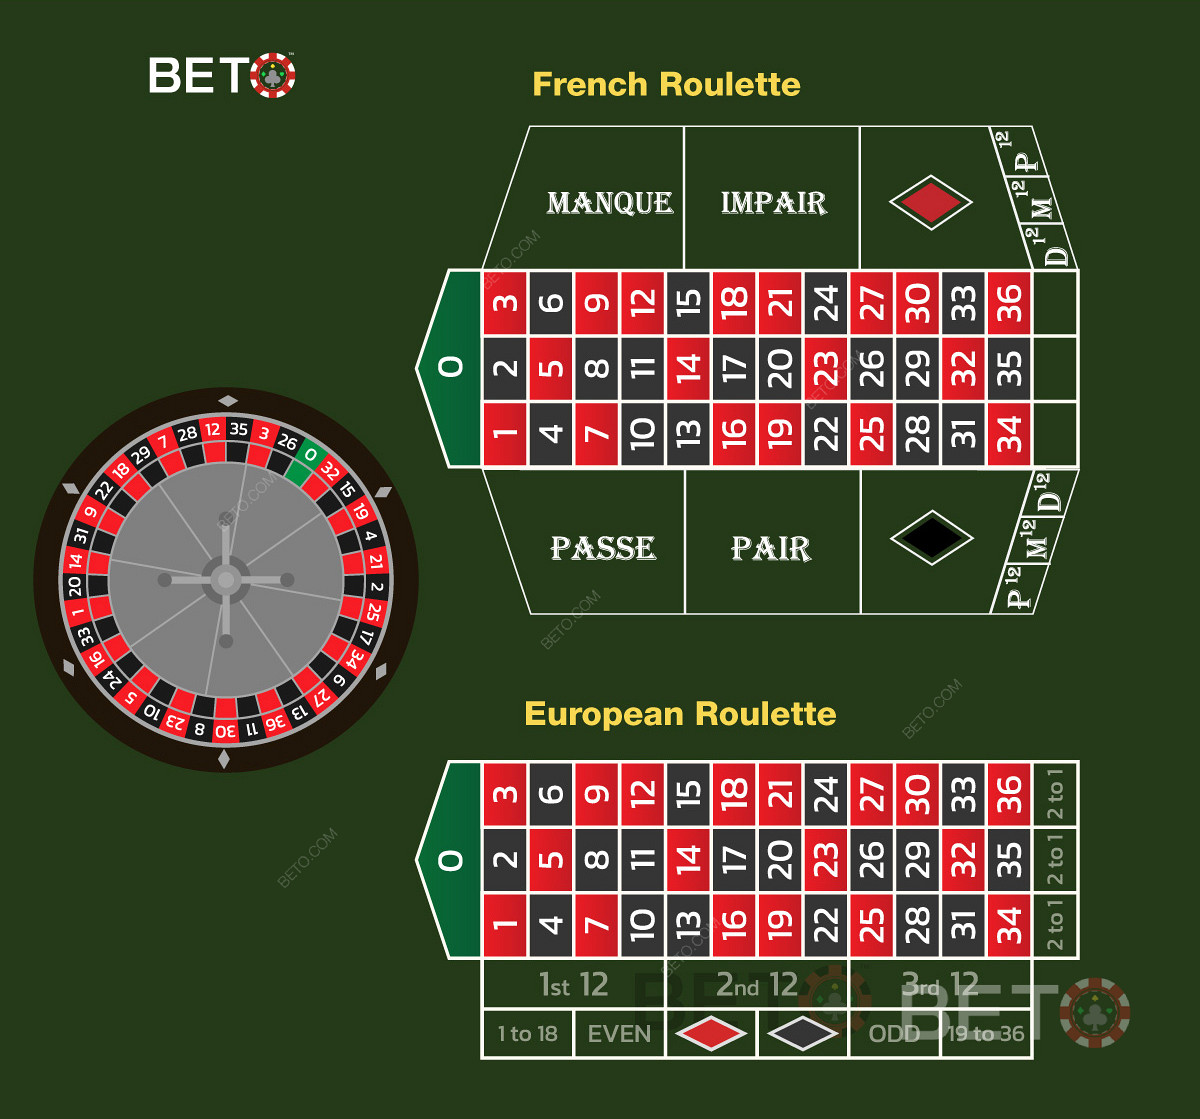 Prantsuse rulett võrreldes Euroopa ruletiga